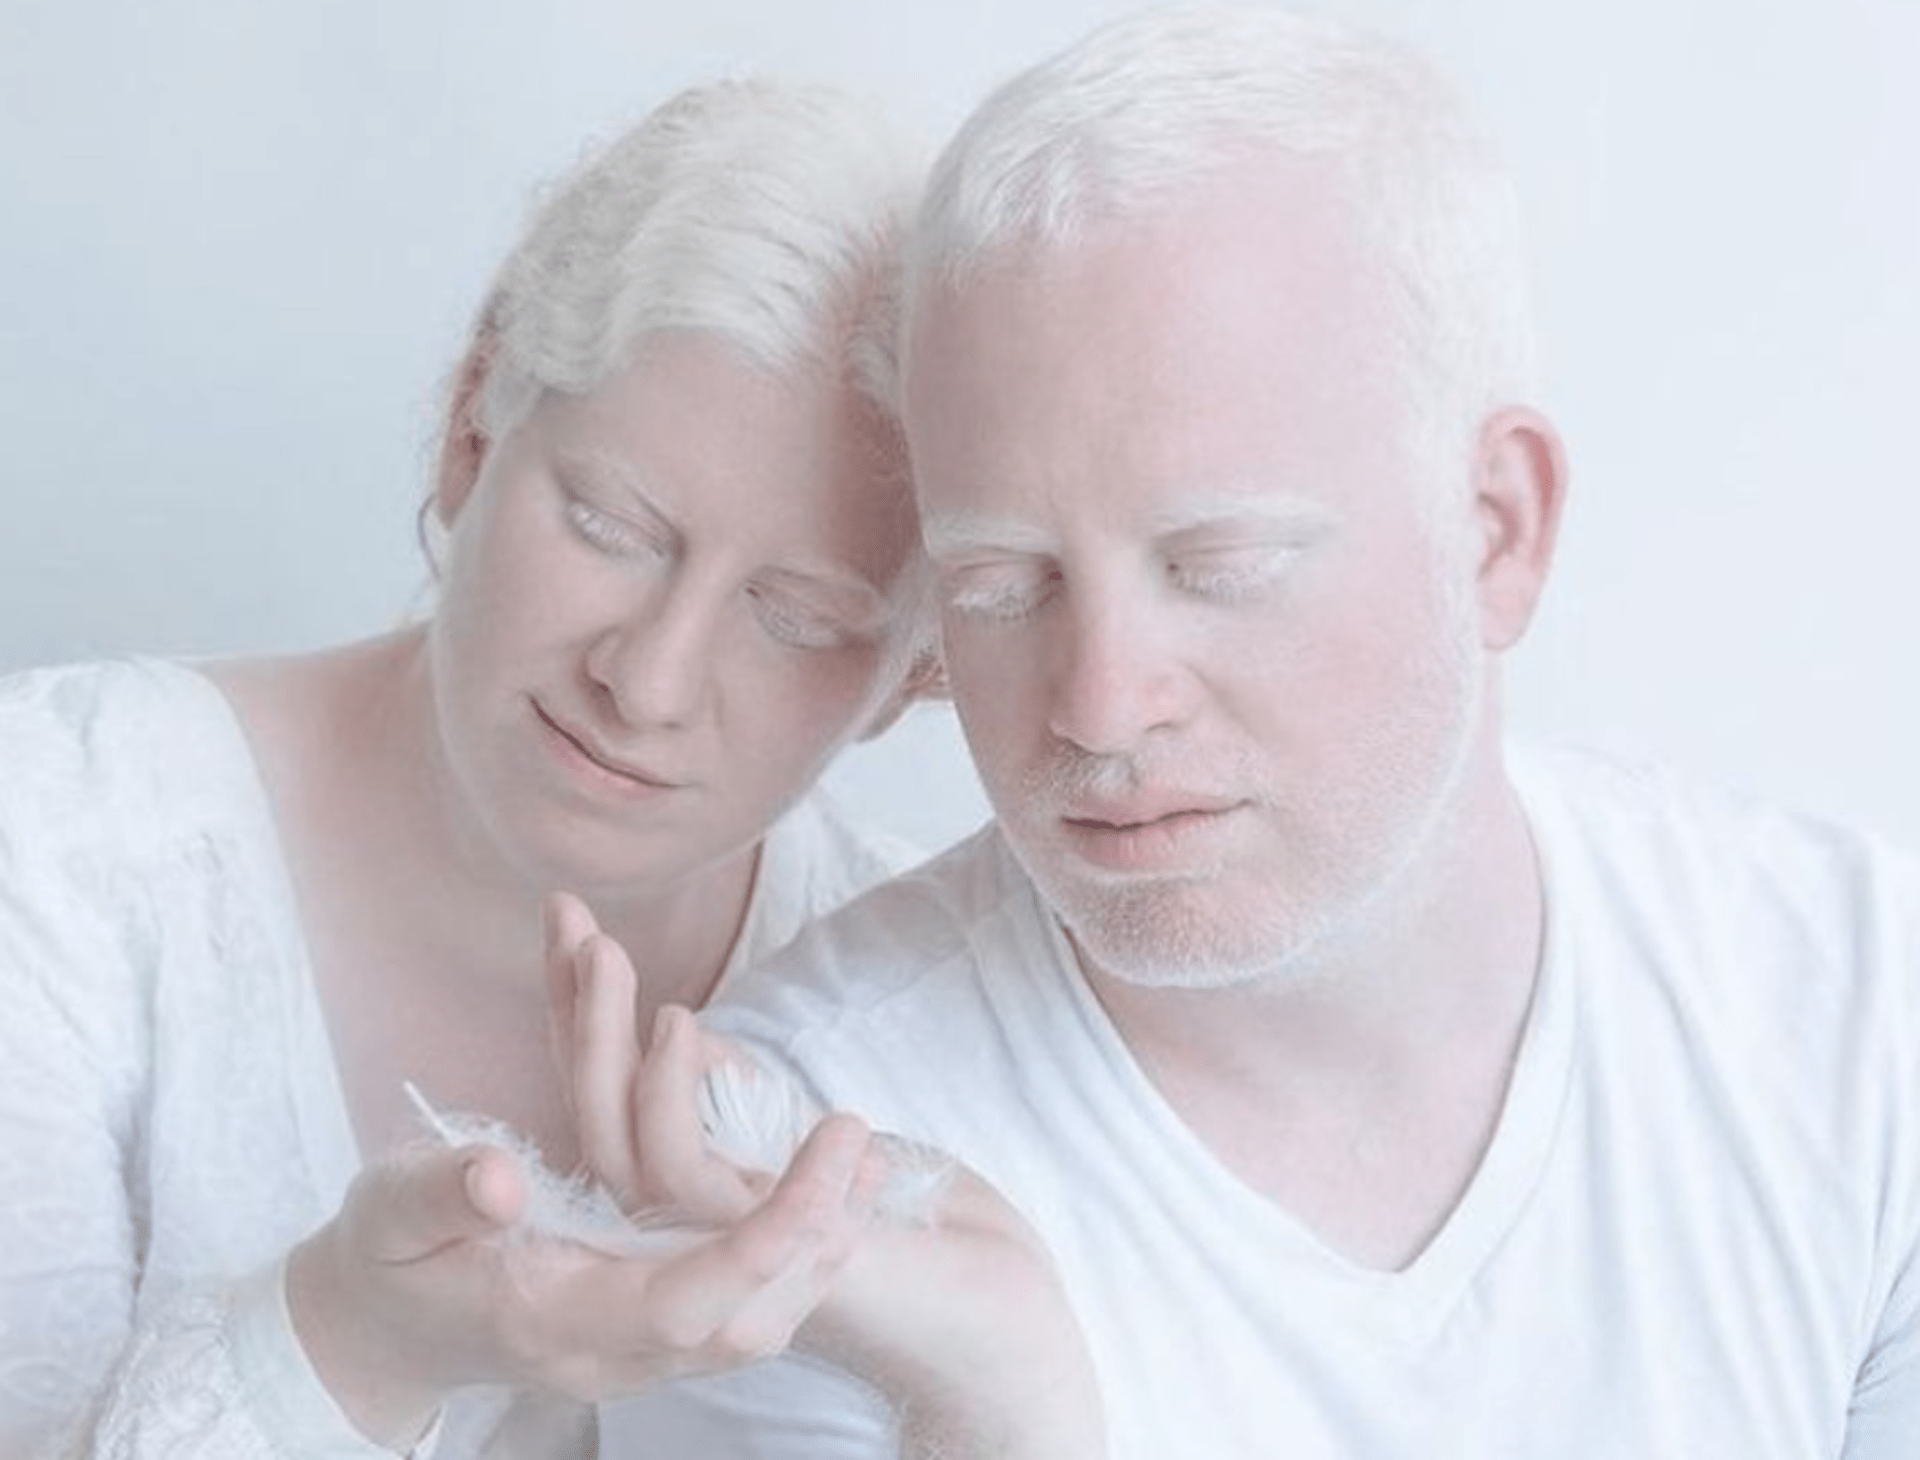 Krása lidí s albinismem 2